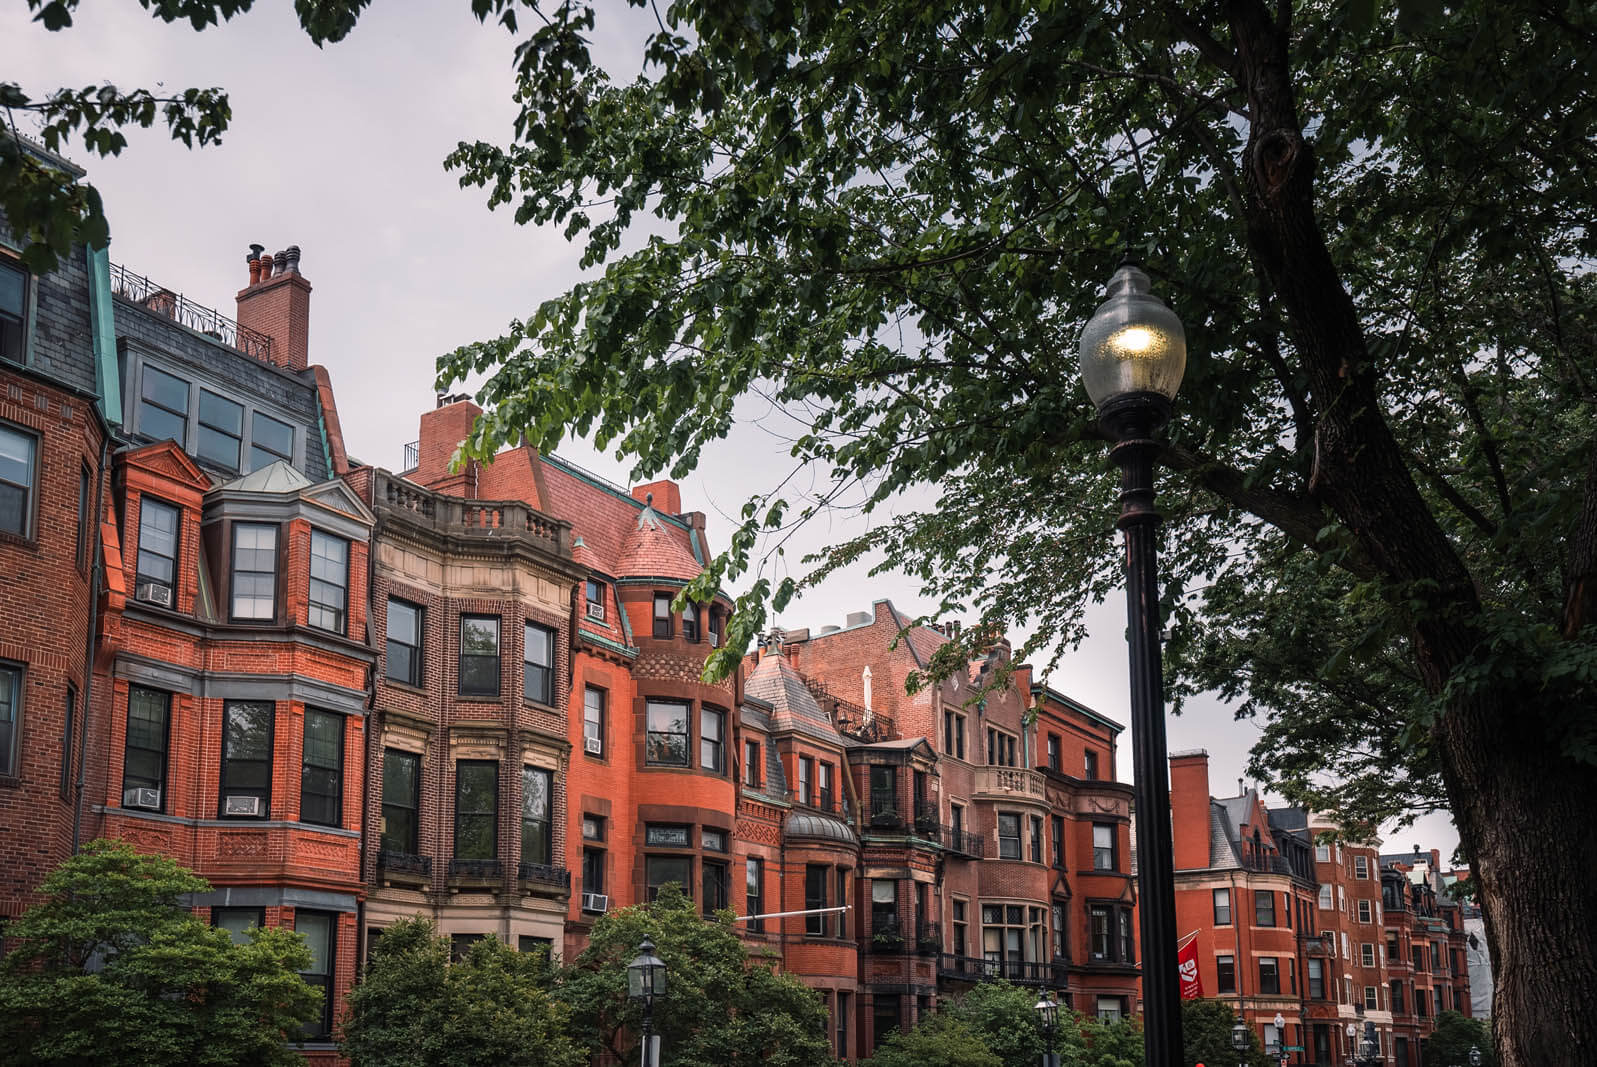 gorgeous homes of Back Bay in Boston Massachusetts